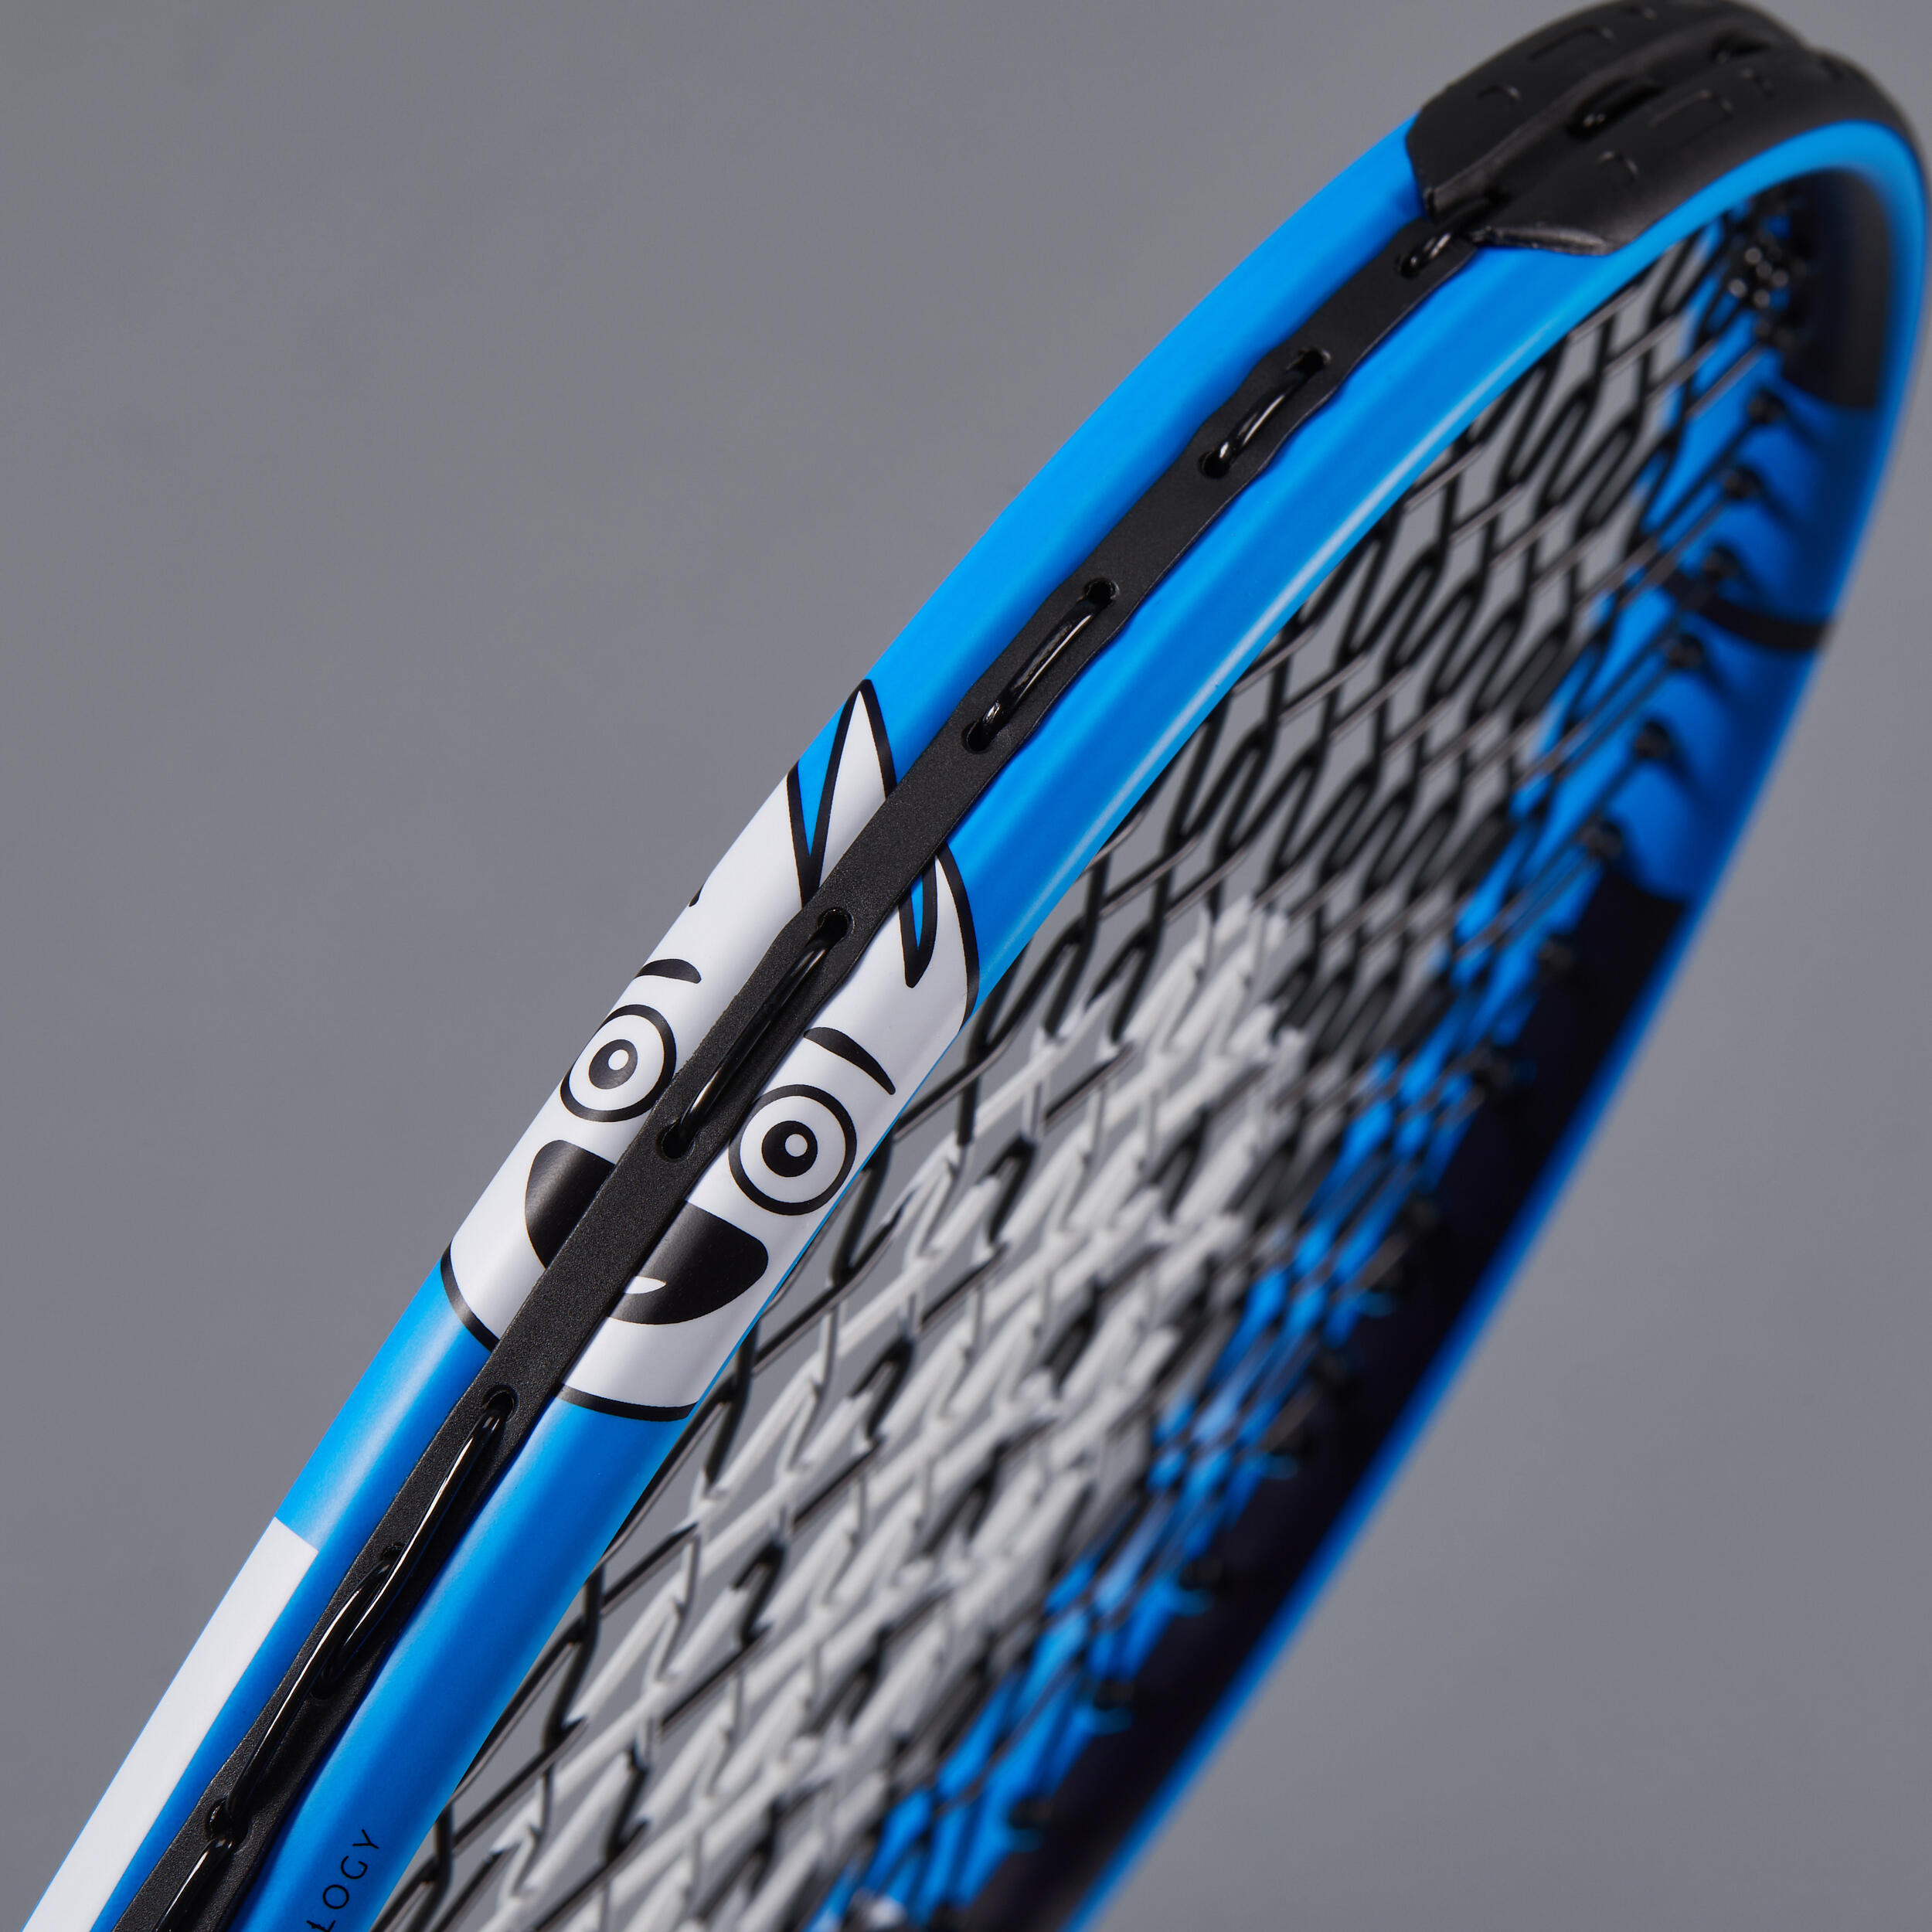 Raquette de tennis 176 g enfant - TR 130 bleu/noir - ARTENGO